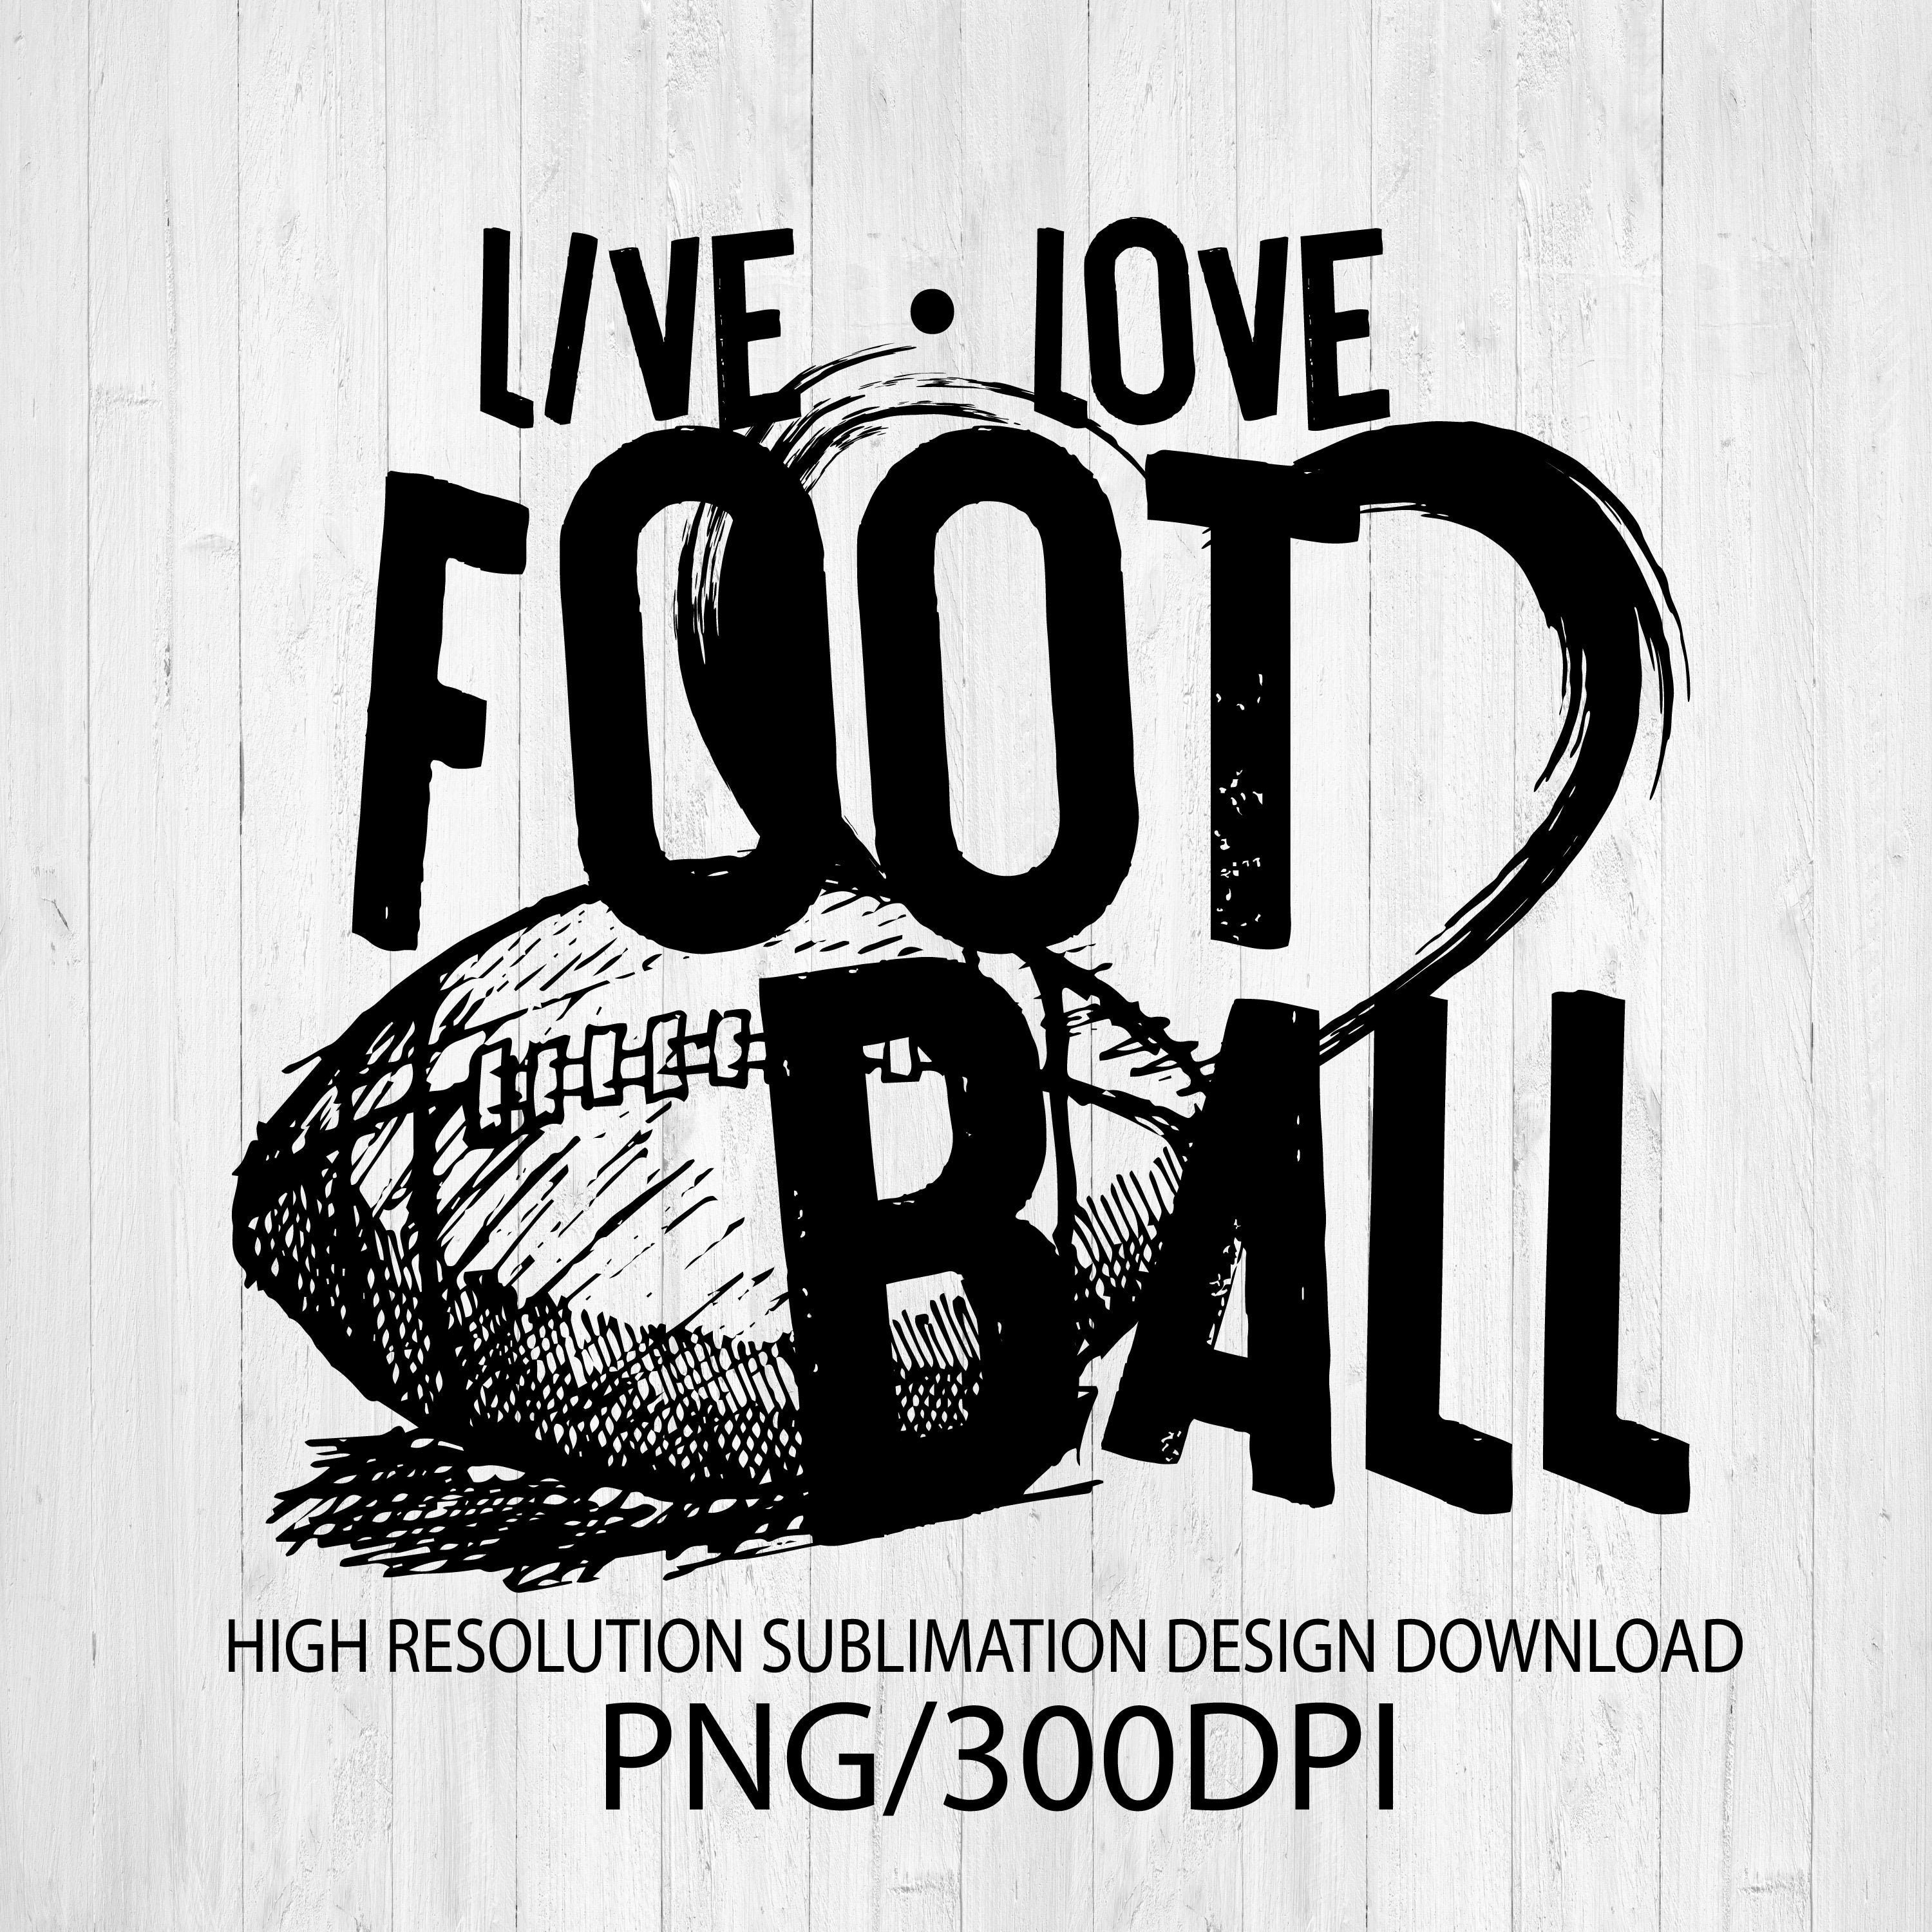 Live Love Football PNG Digital Download Sublimation Design